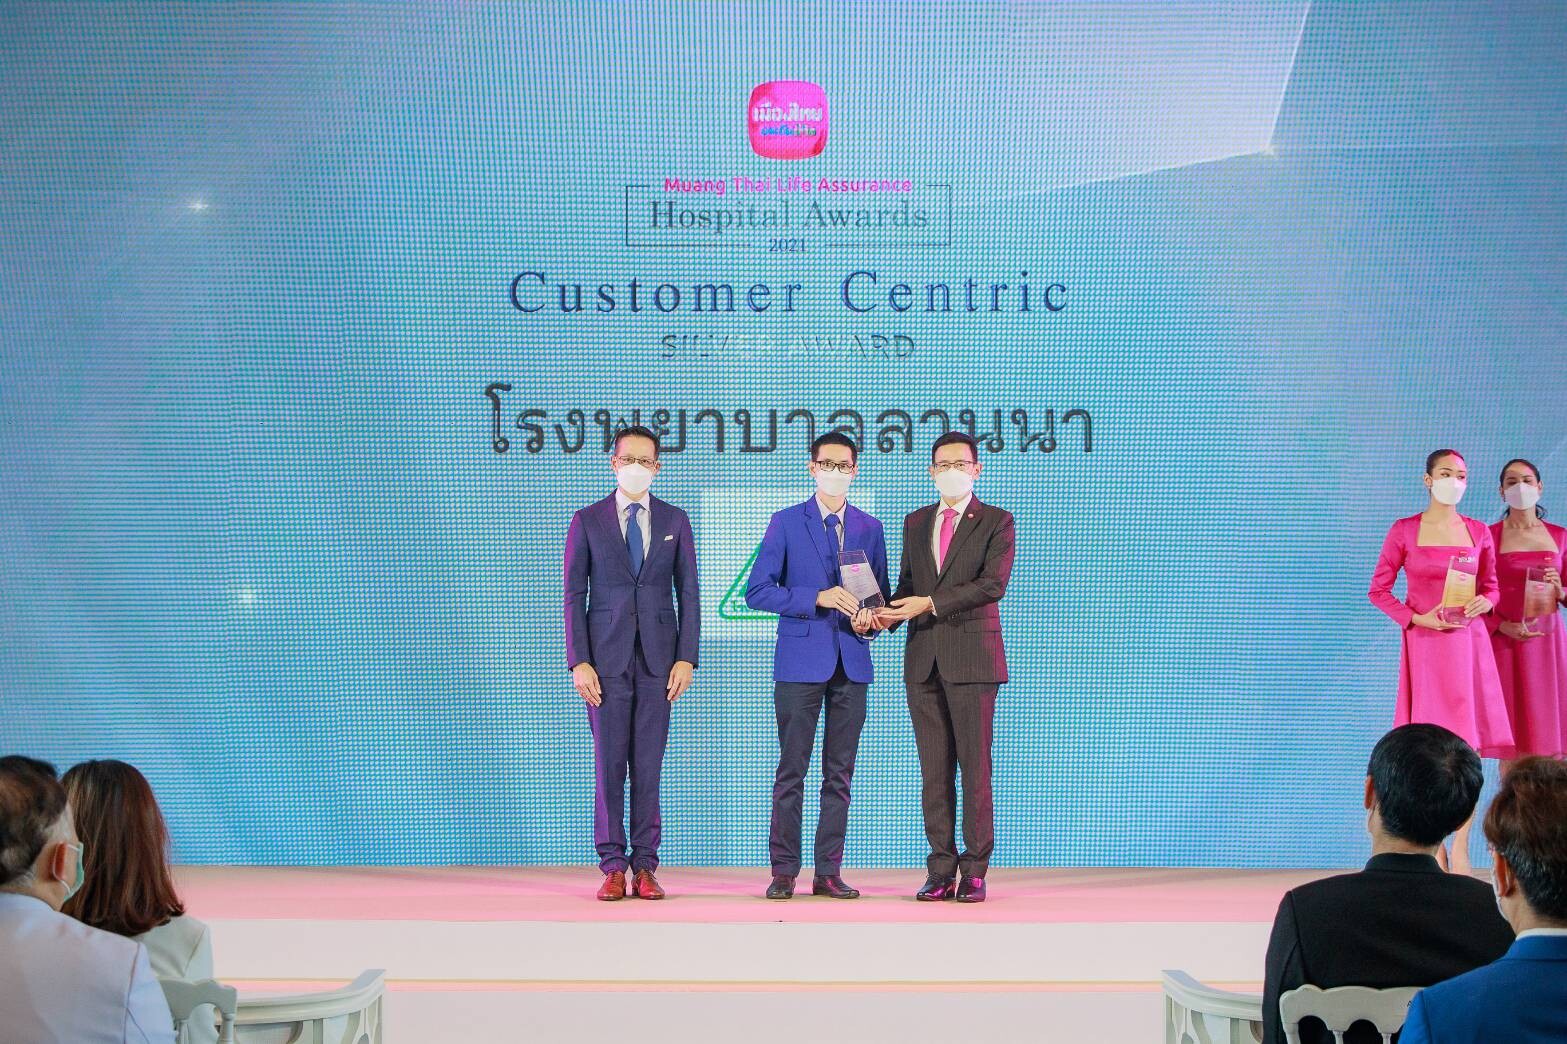 บริษัท เมืองไทยประกันชีวิต จำกัด (มหาชน) จัดพิธีมอบรางวัลเกียรติยศ "Muang Thai Life Assurance Hospital Awards 2021